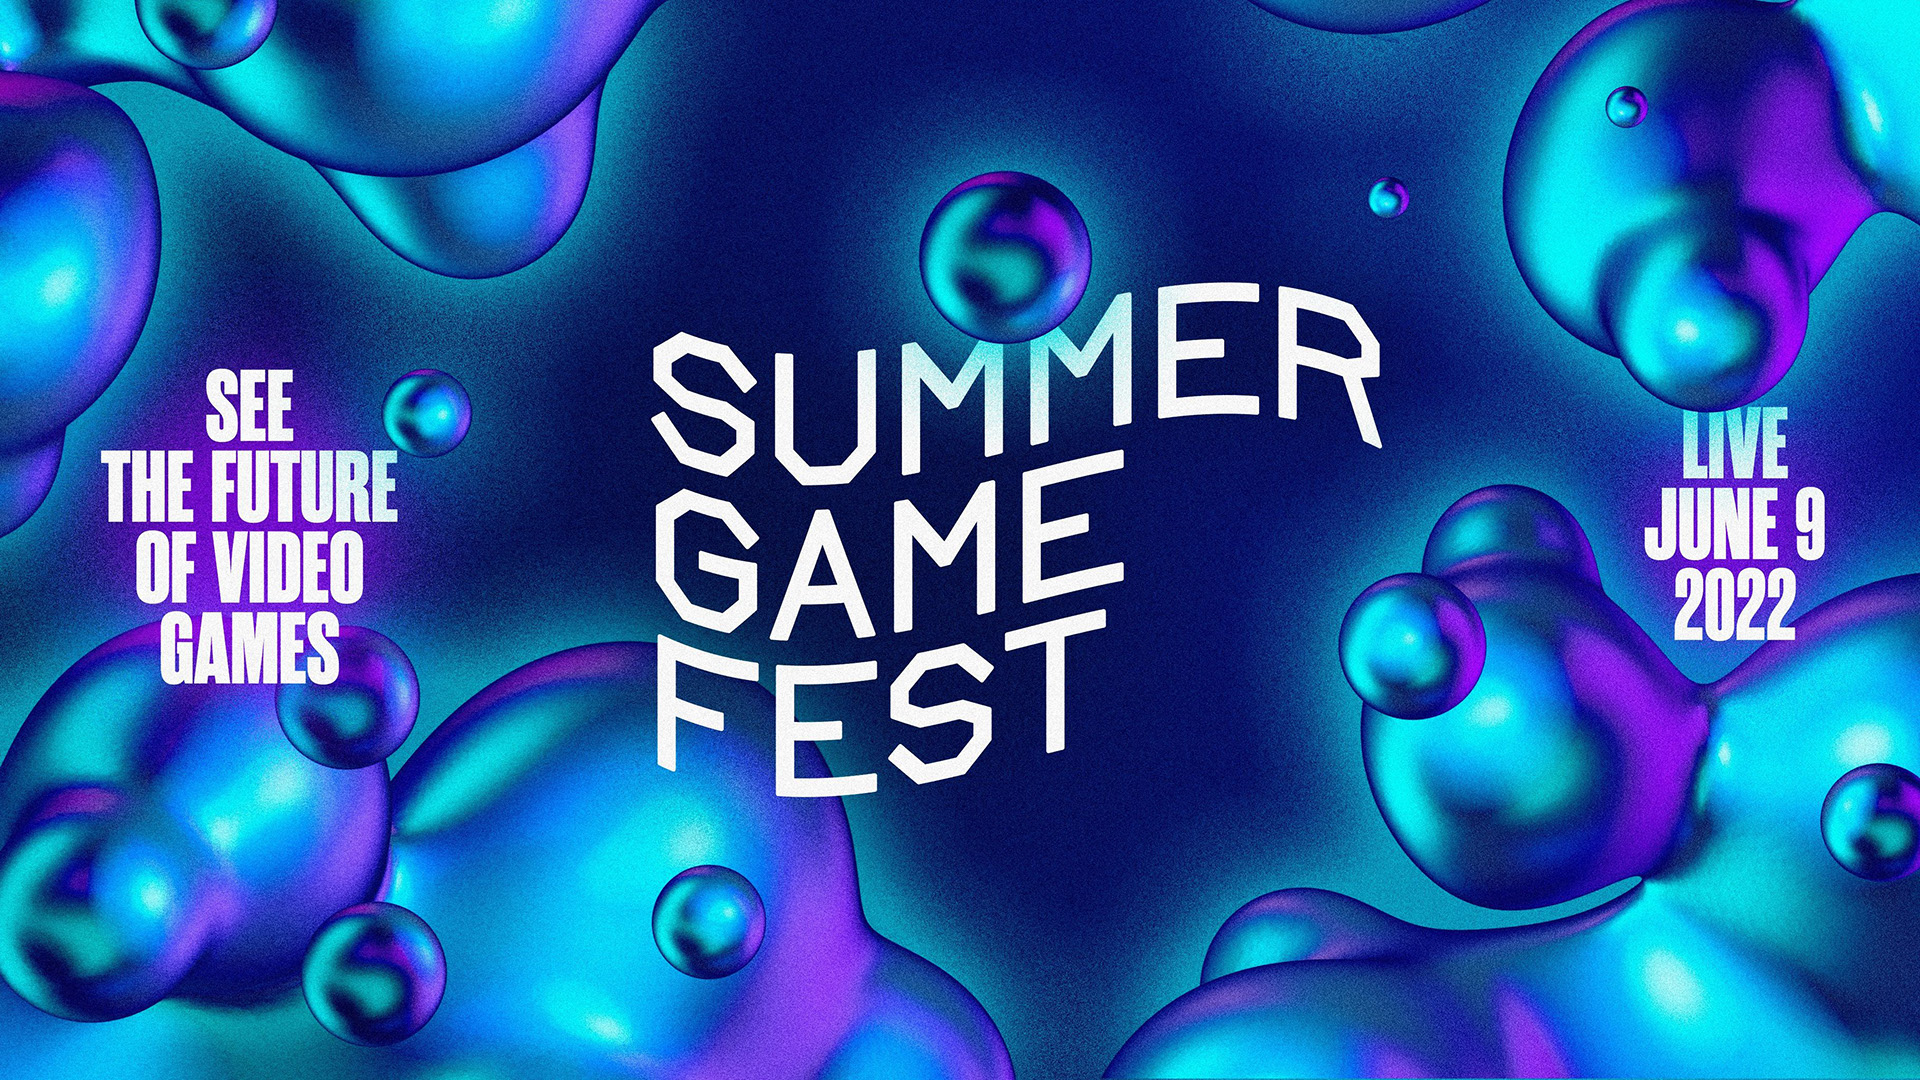 Summer Game Fest 2022 จะจัดขึ้นในเดือนมิถุนายนนี้